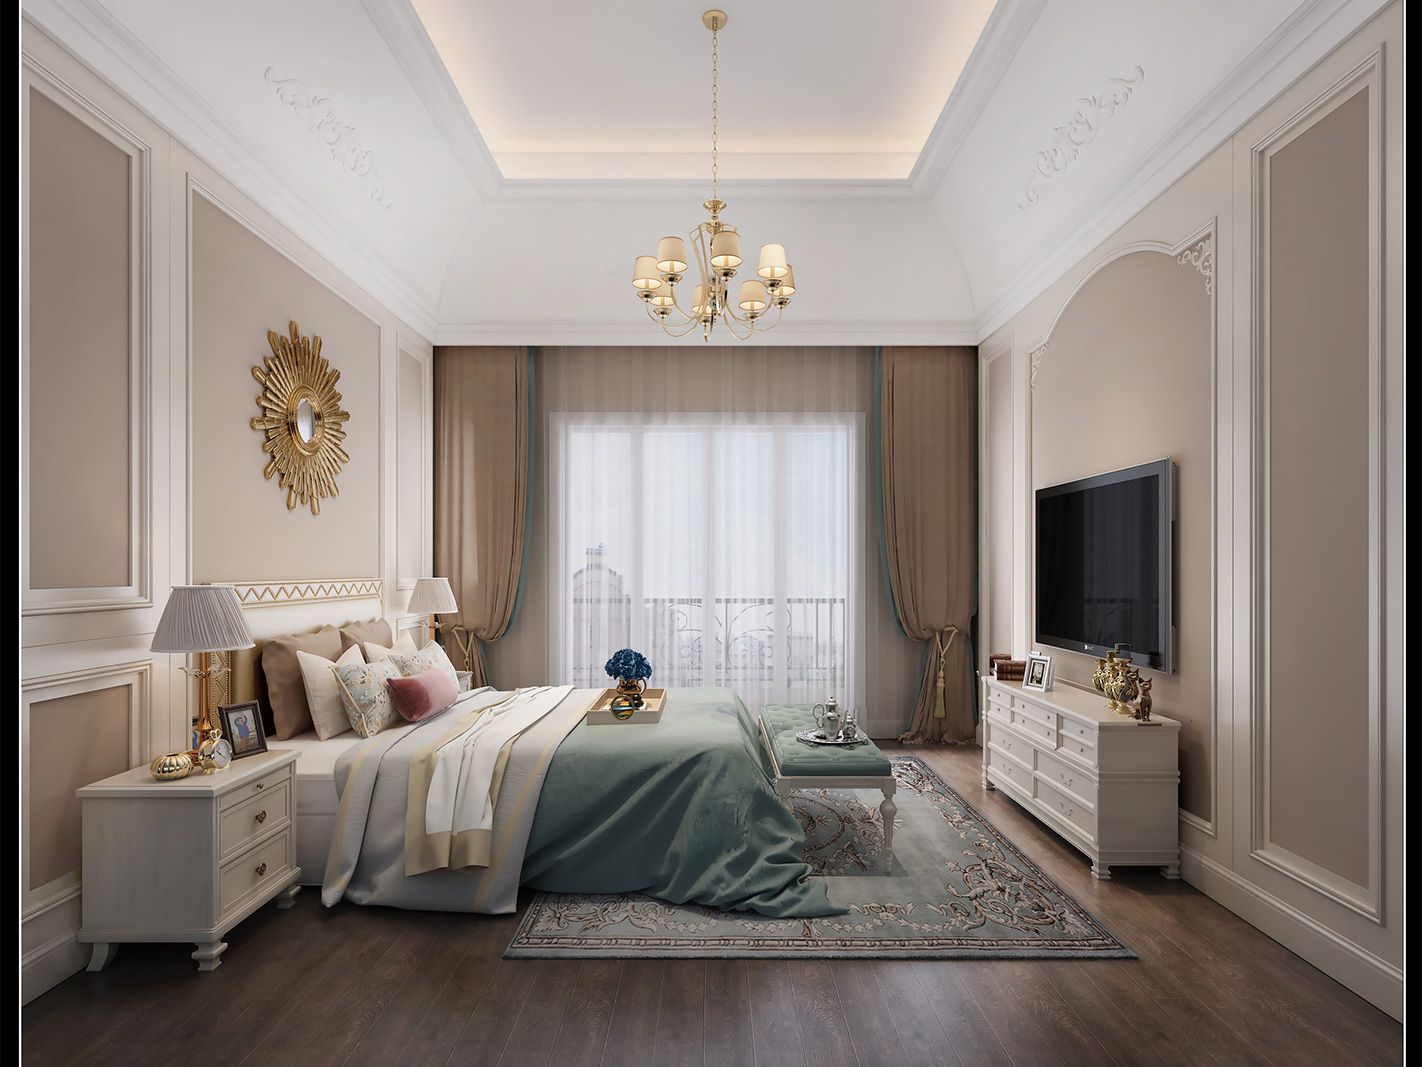 嘉定区中海翡翠500平美式风格独栋别墅卧室装修效果图